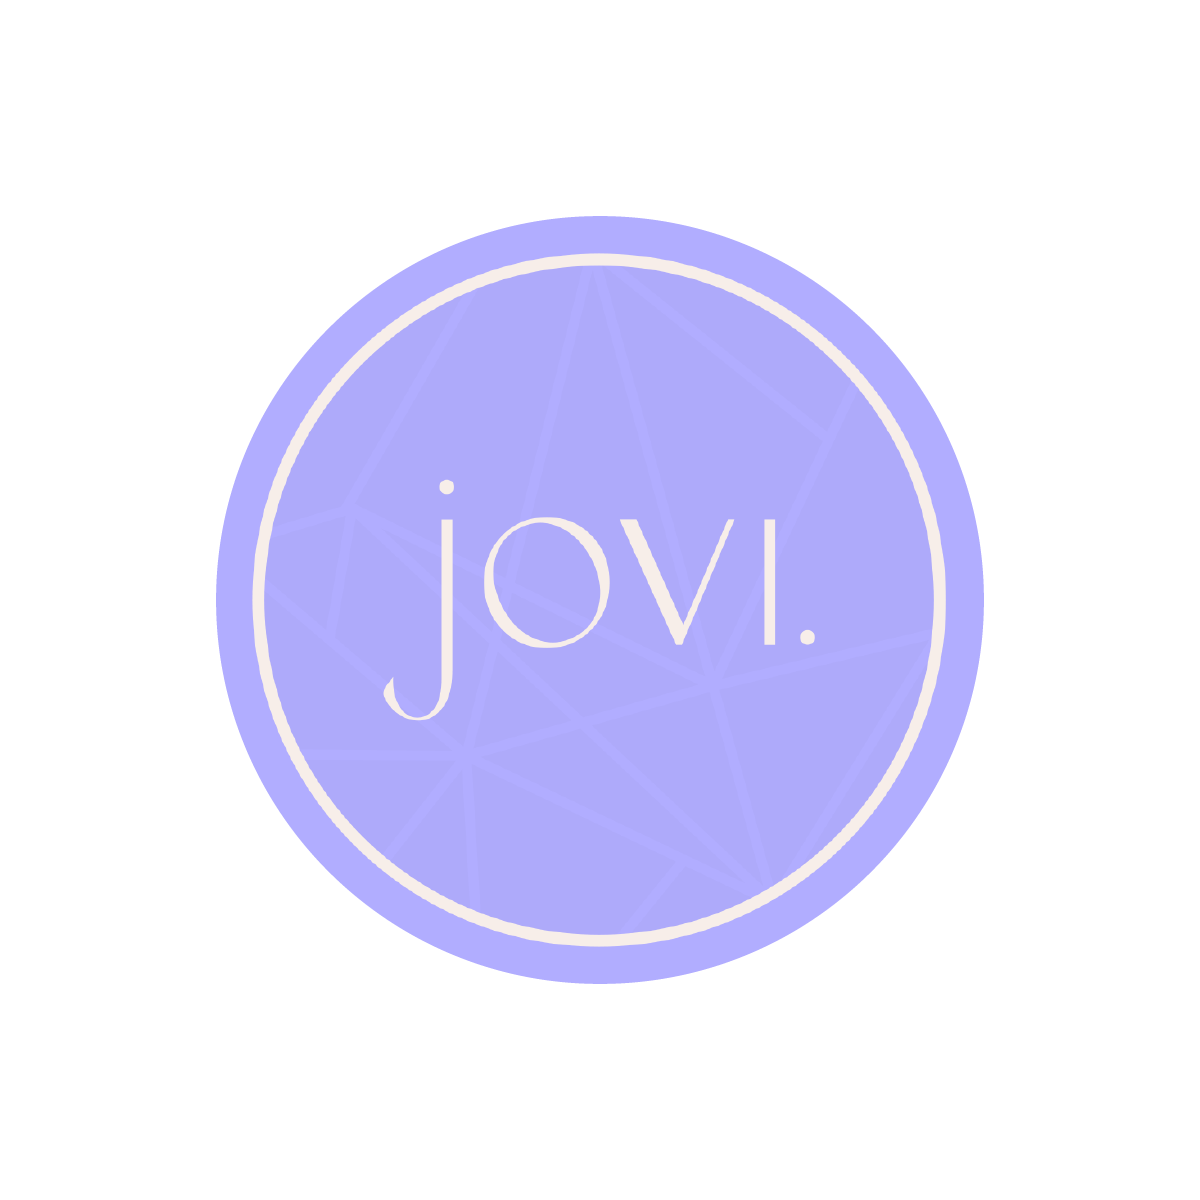 Meet Jovi ***